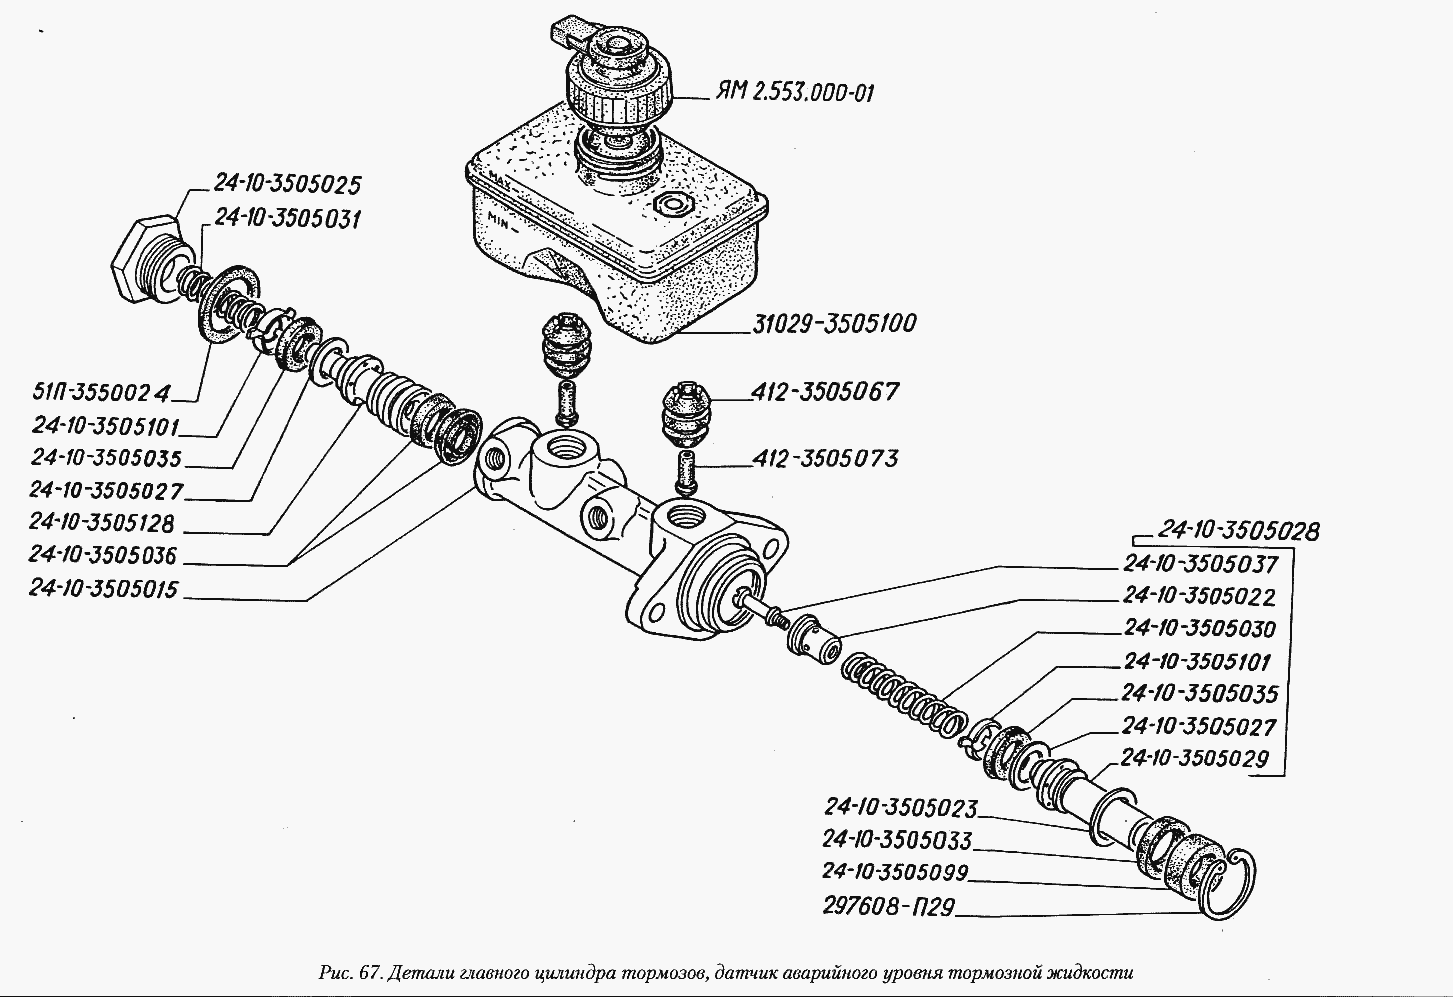 Детали главного цилиндра тормозов, датчик аварийного уровня тормозной .